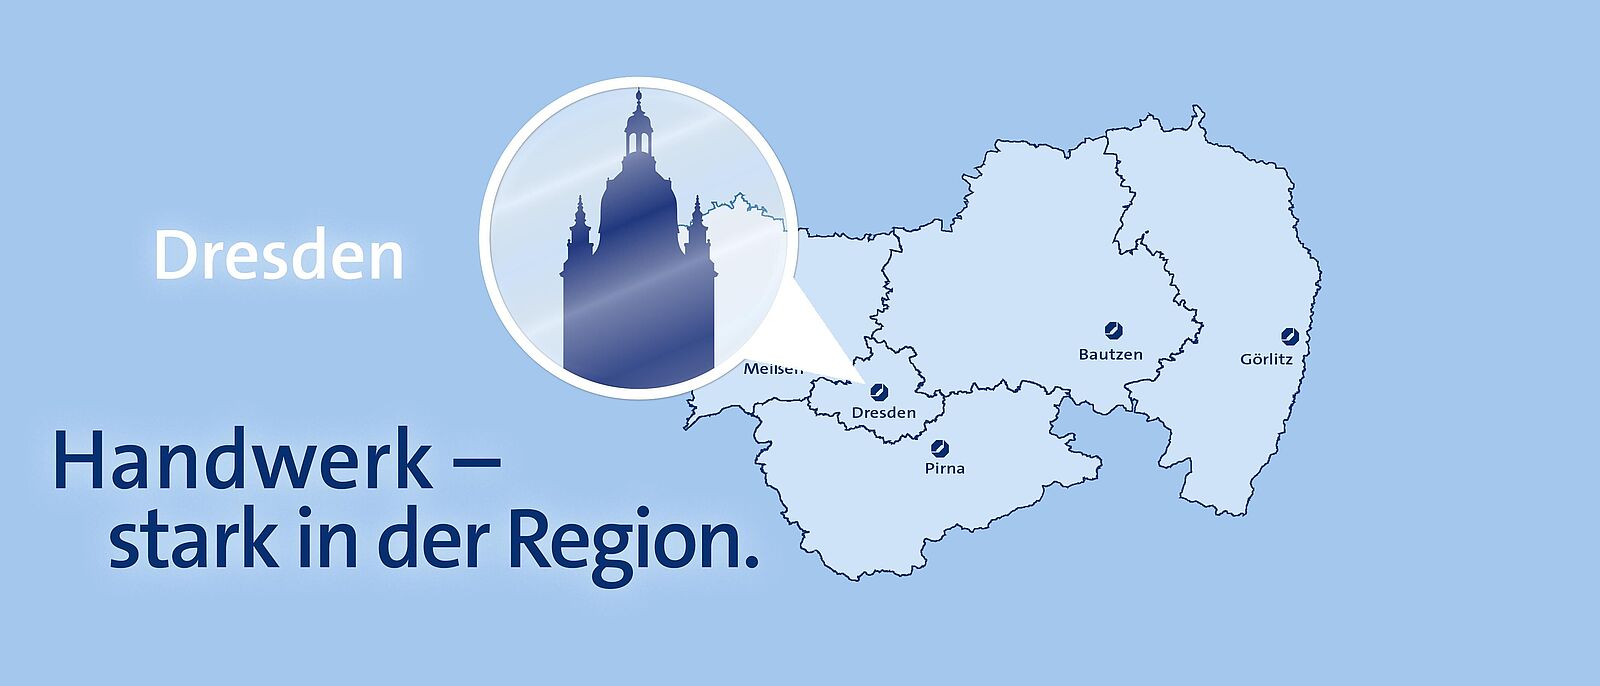 Hellblauer Hintergrund mit einer Karte der Landesdirektion Dresden, darauf ein runder weißer Marker mit der Sehenswürdigkeit von Dresden als dunkelblau hinterlegter Silhouette, daran ein weißer Pfeil der auf Dresden zeigt.